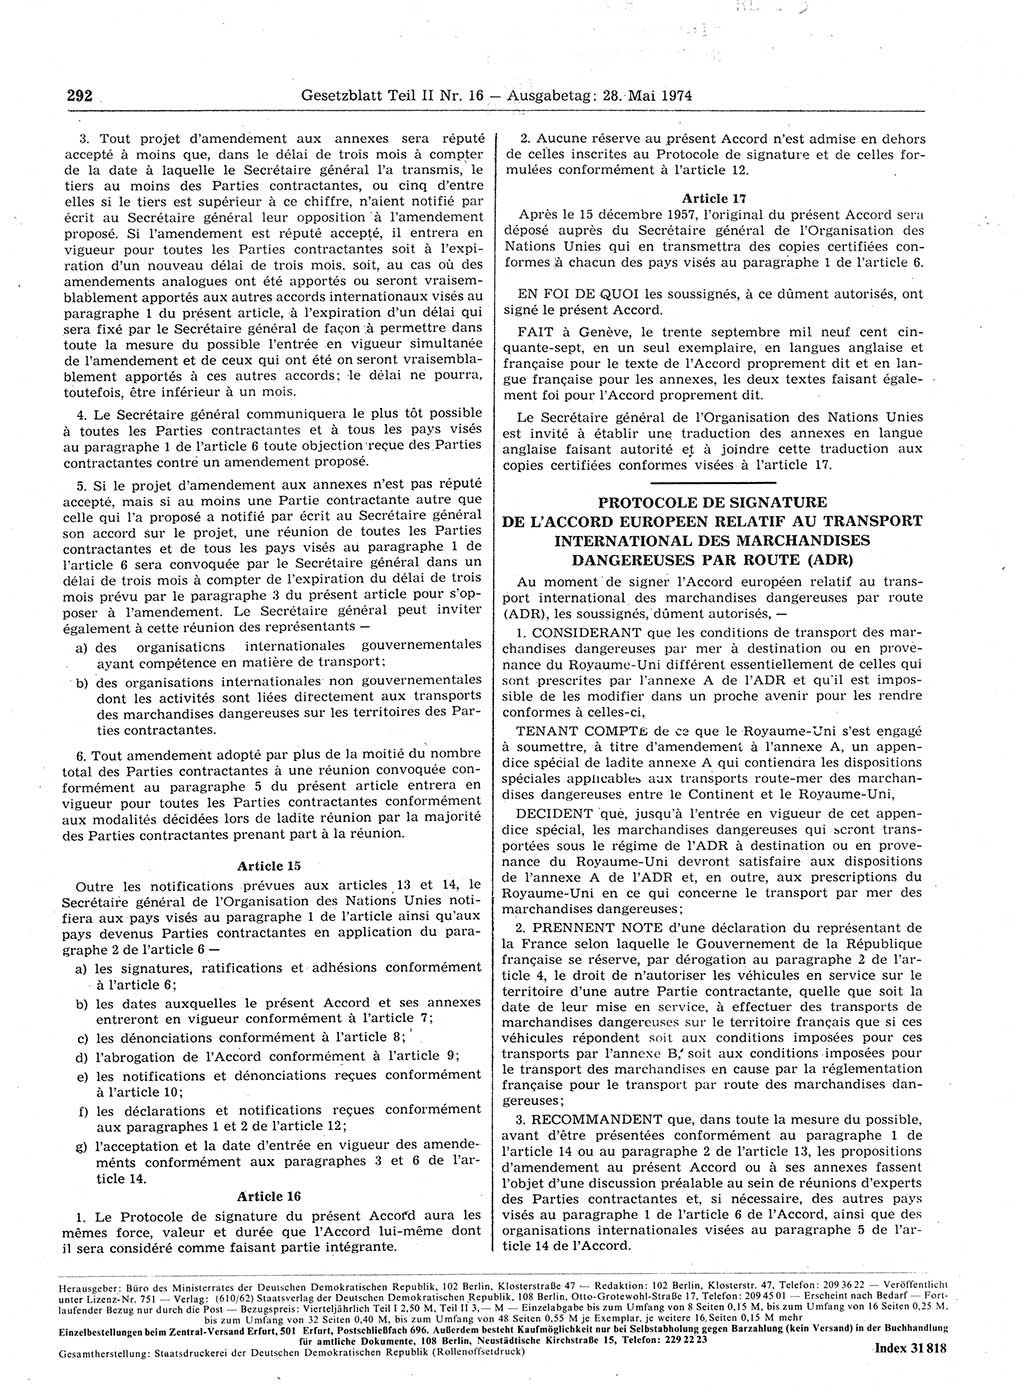 Gesetzblatt (GBl.) der Deutschen Demokratischen Republik (DDR) Teil ⅠⅠ 1974, Seite 292 (GBl. DDR ⅠⅠ 1974, S. 292)